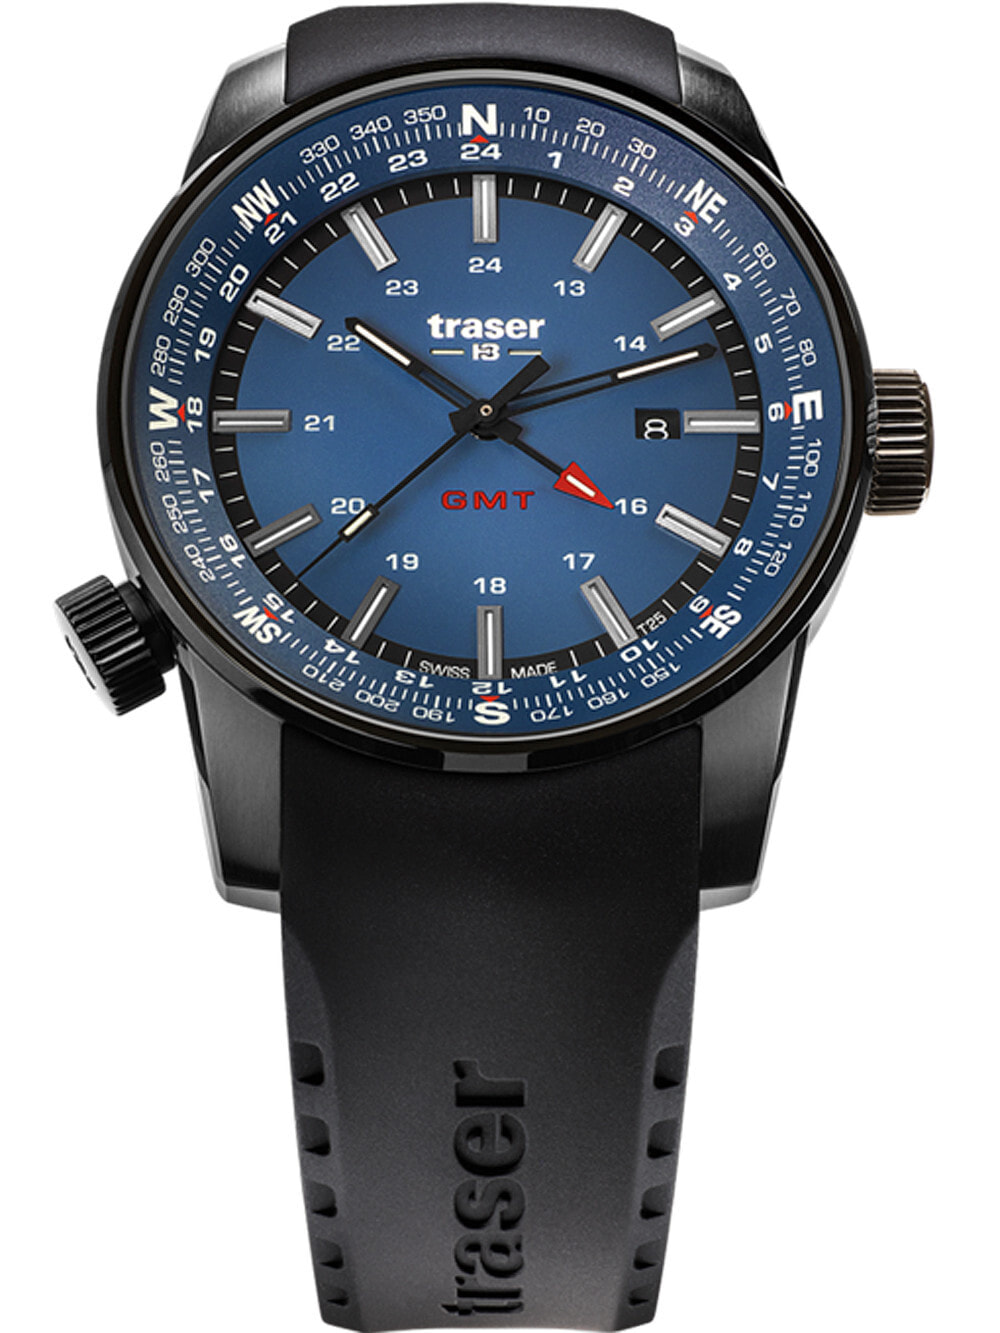 Мужские наручные часы с черным силиконовым ремешком Traser H3 109743 P68 Pathfinder GMT 46mm 10ATM